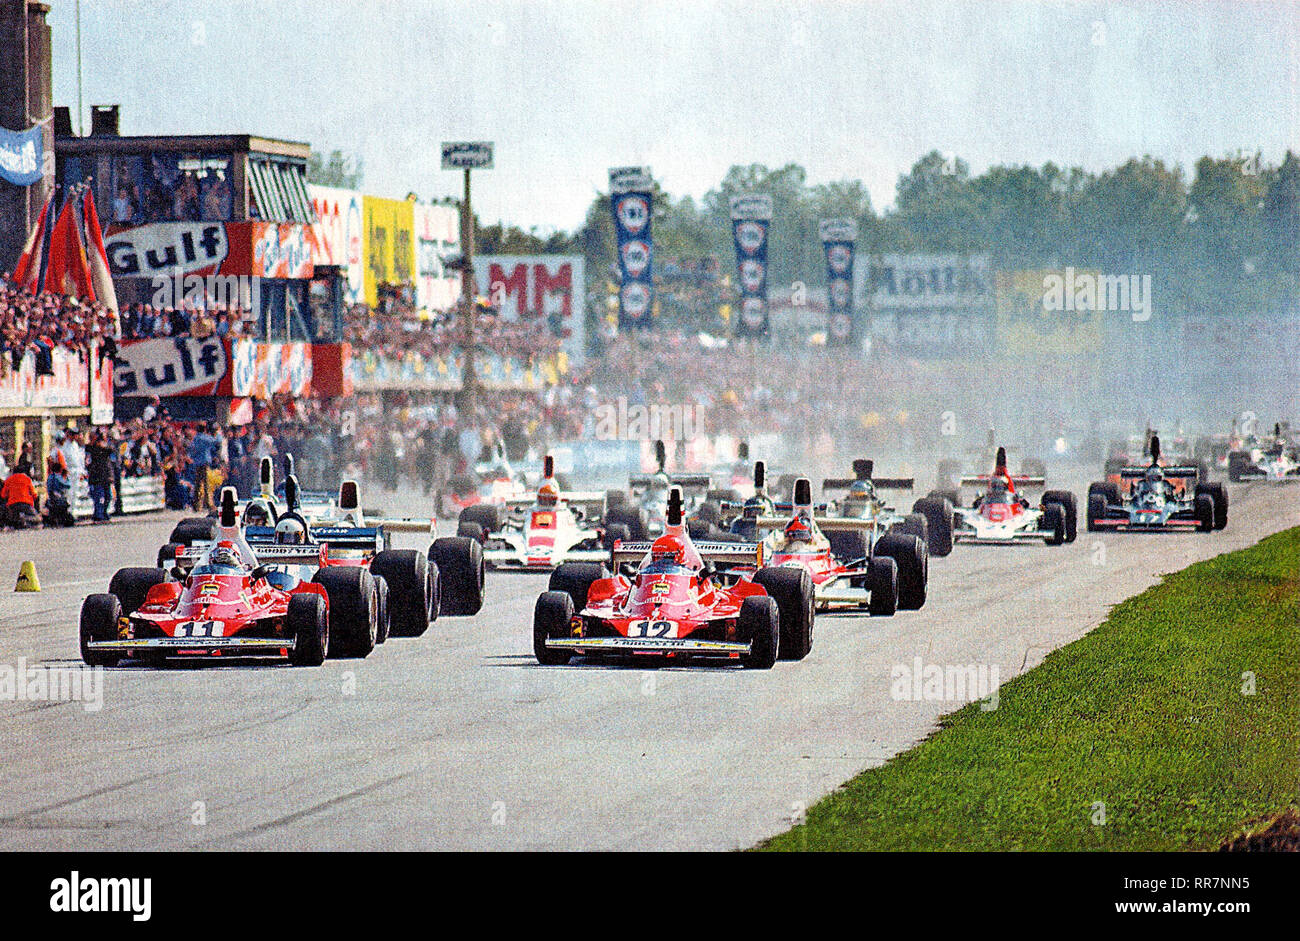 Monza, Autodromo Nazionale, 7. September 1975. Die beiden Scuderia Ferrari, der Schweizer Clay Regazzoni (Nr. 11) und der österreichischen Niki Lauda (Nr. 12) Diese letzte poleman, nehmen Sie die Leitung an der Start der XLVI Grand Prix von Italien an Bord ihrer Ferrari 312 T Stockfoto